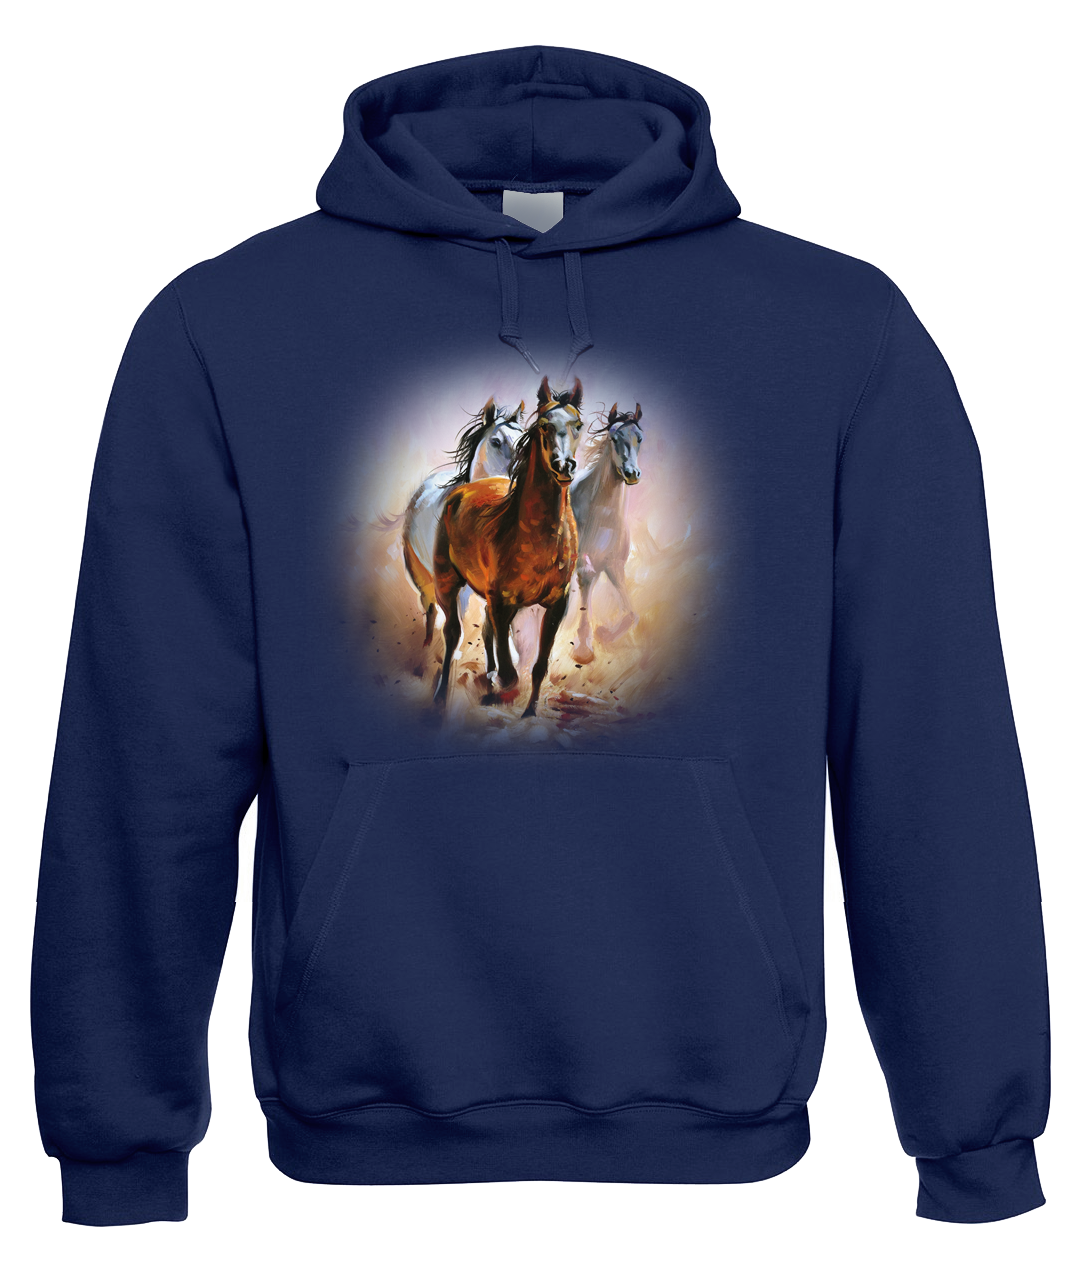 Mikina s koněm - Malované koně Velikost: S, Barva: Tmavě modrá